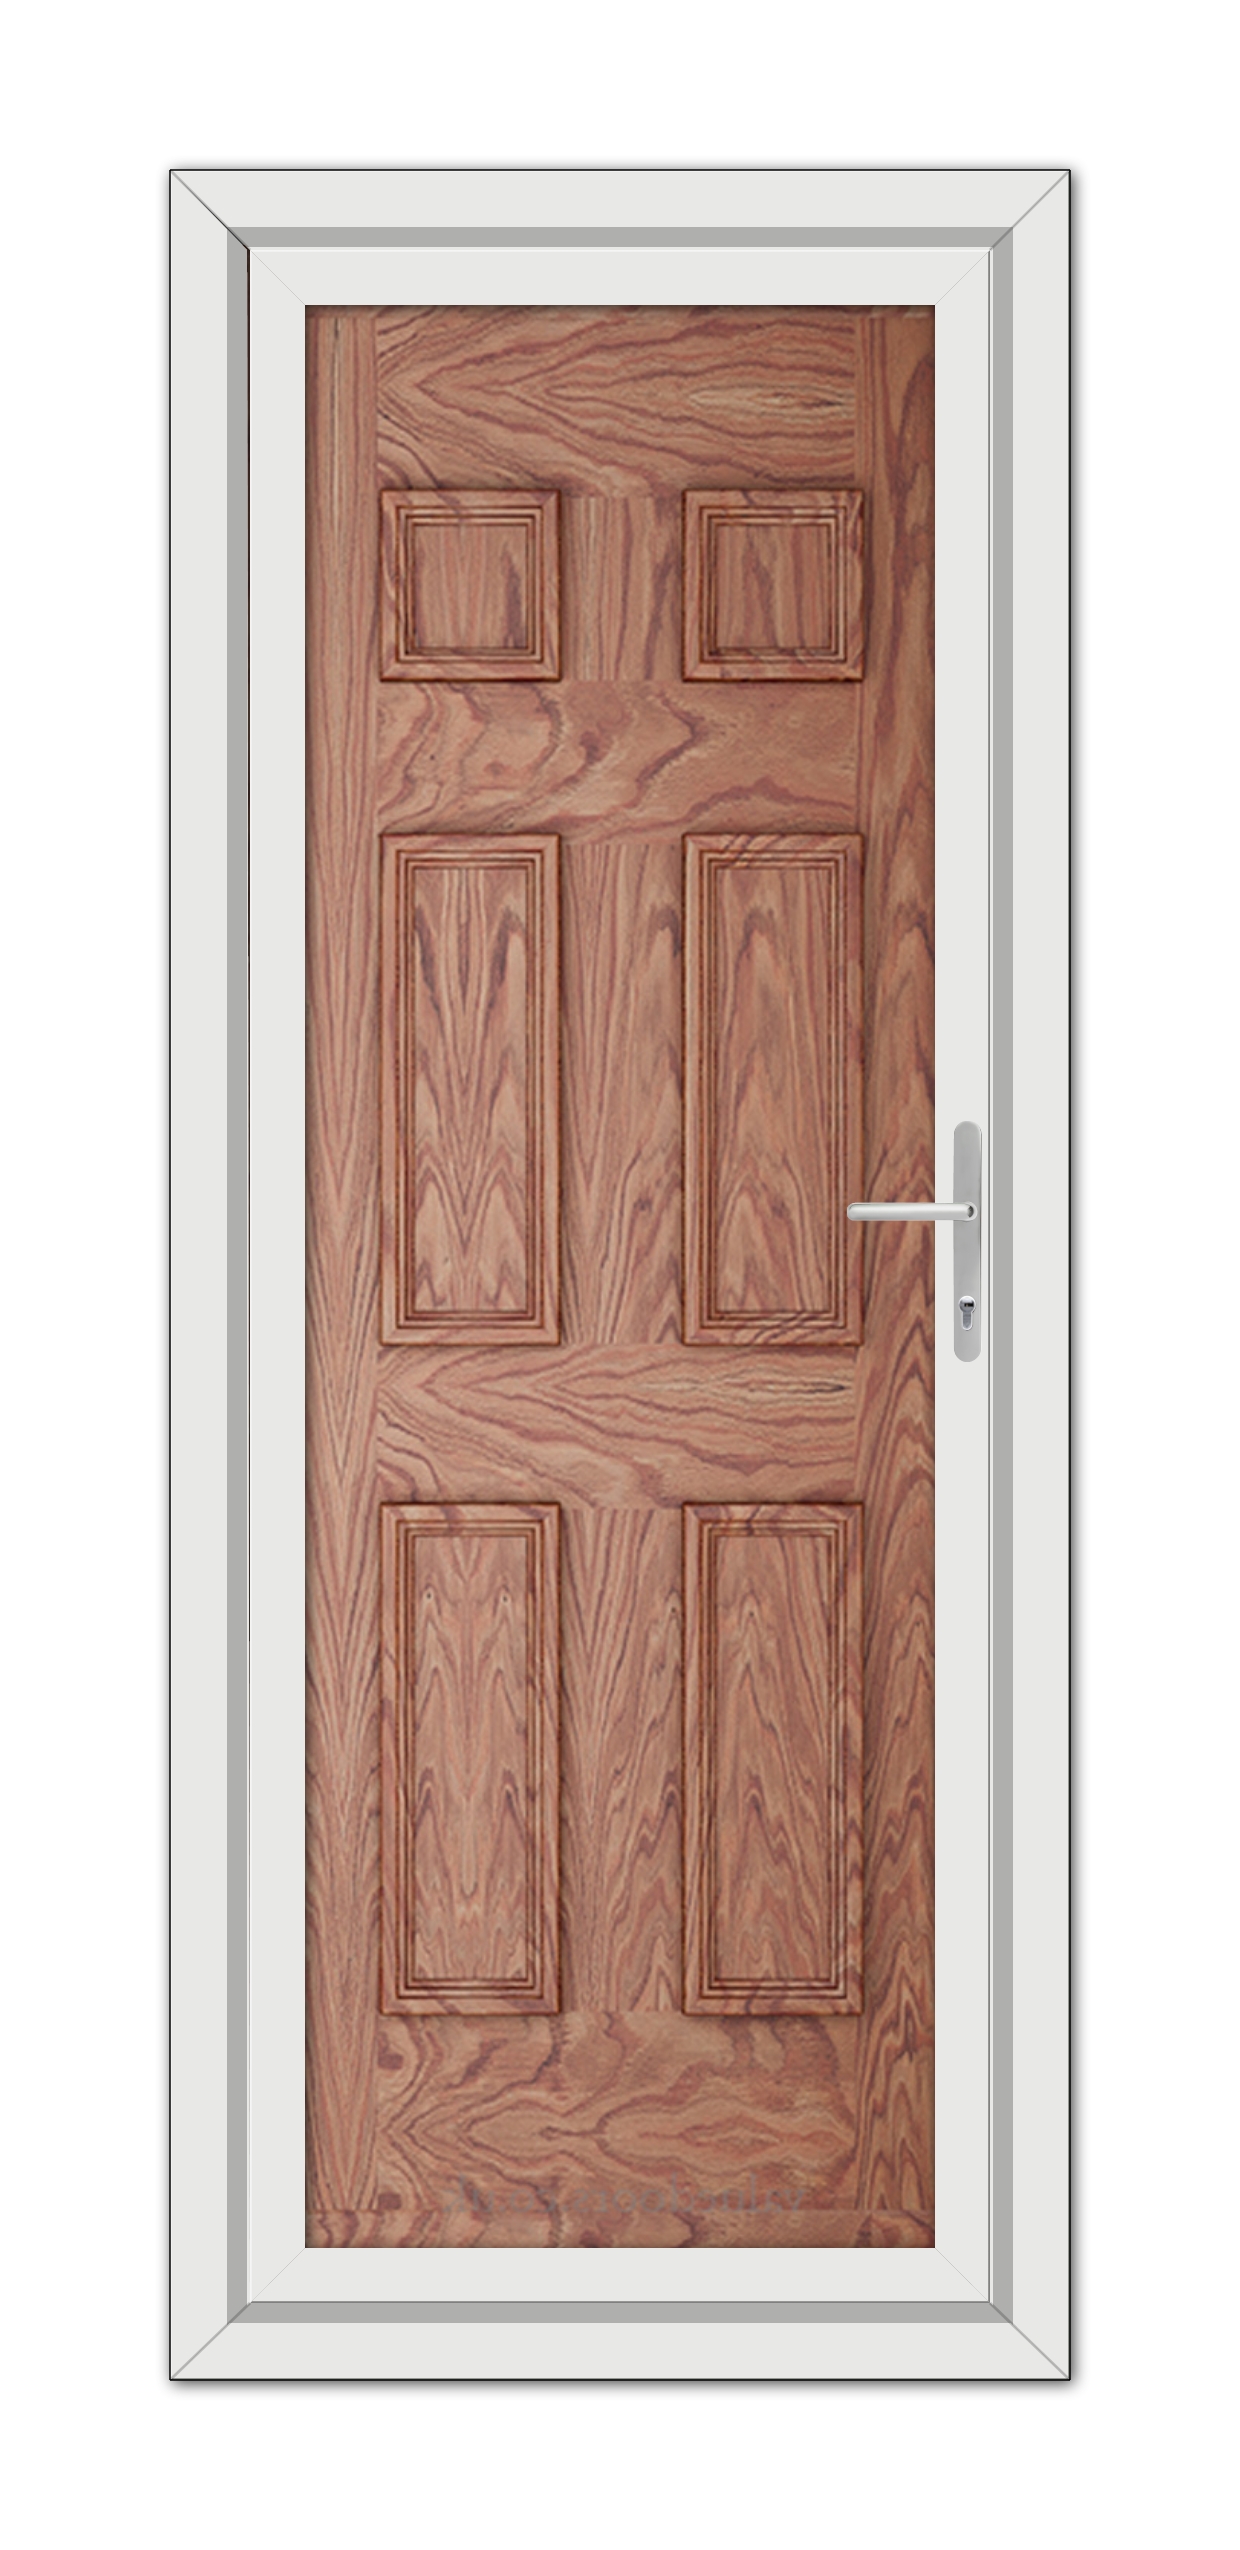 A close-up of a Solid Oak Windsor Solid uPVC Door.